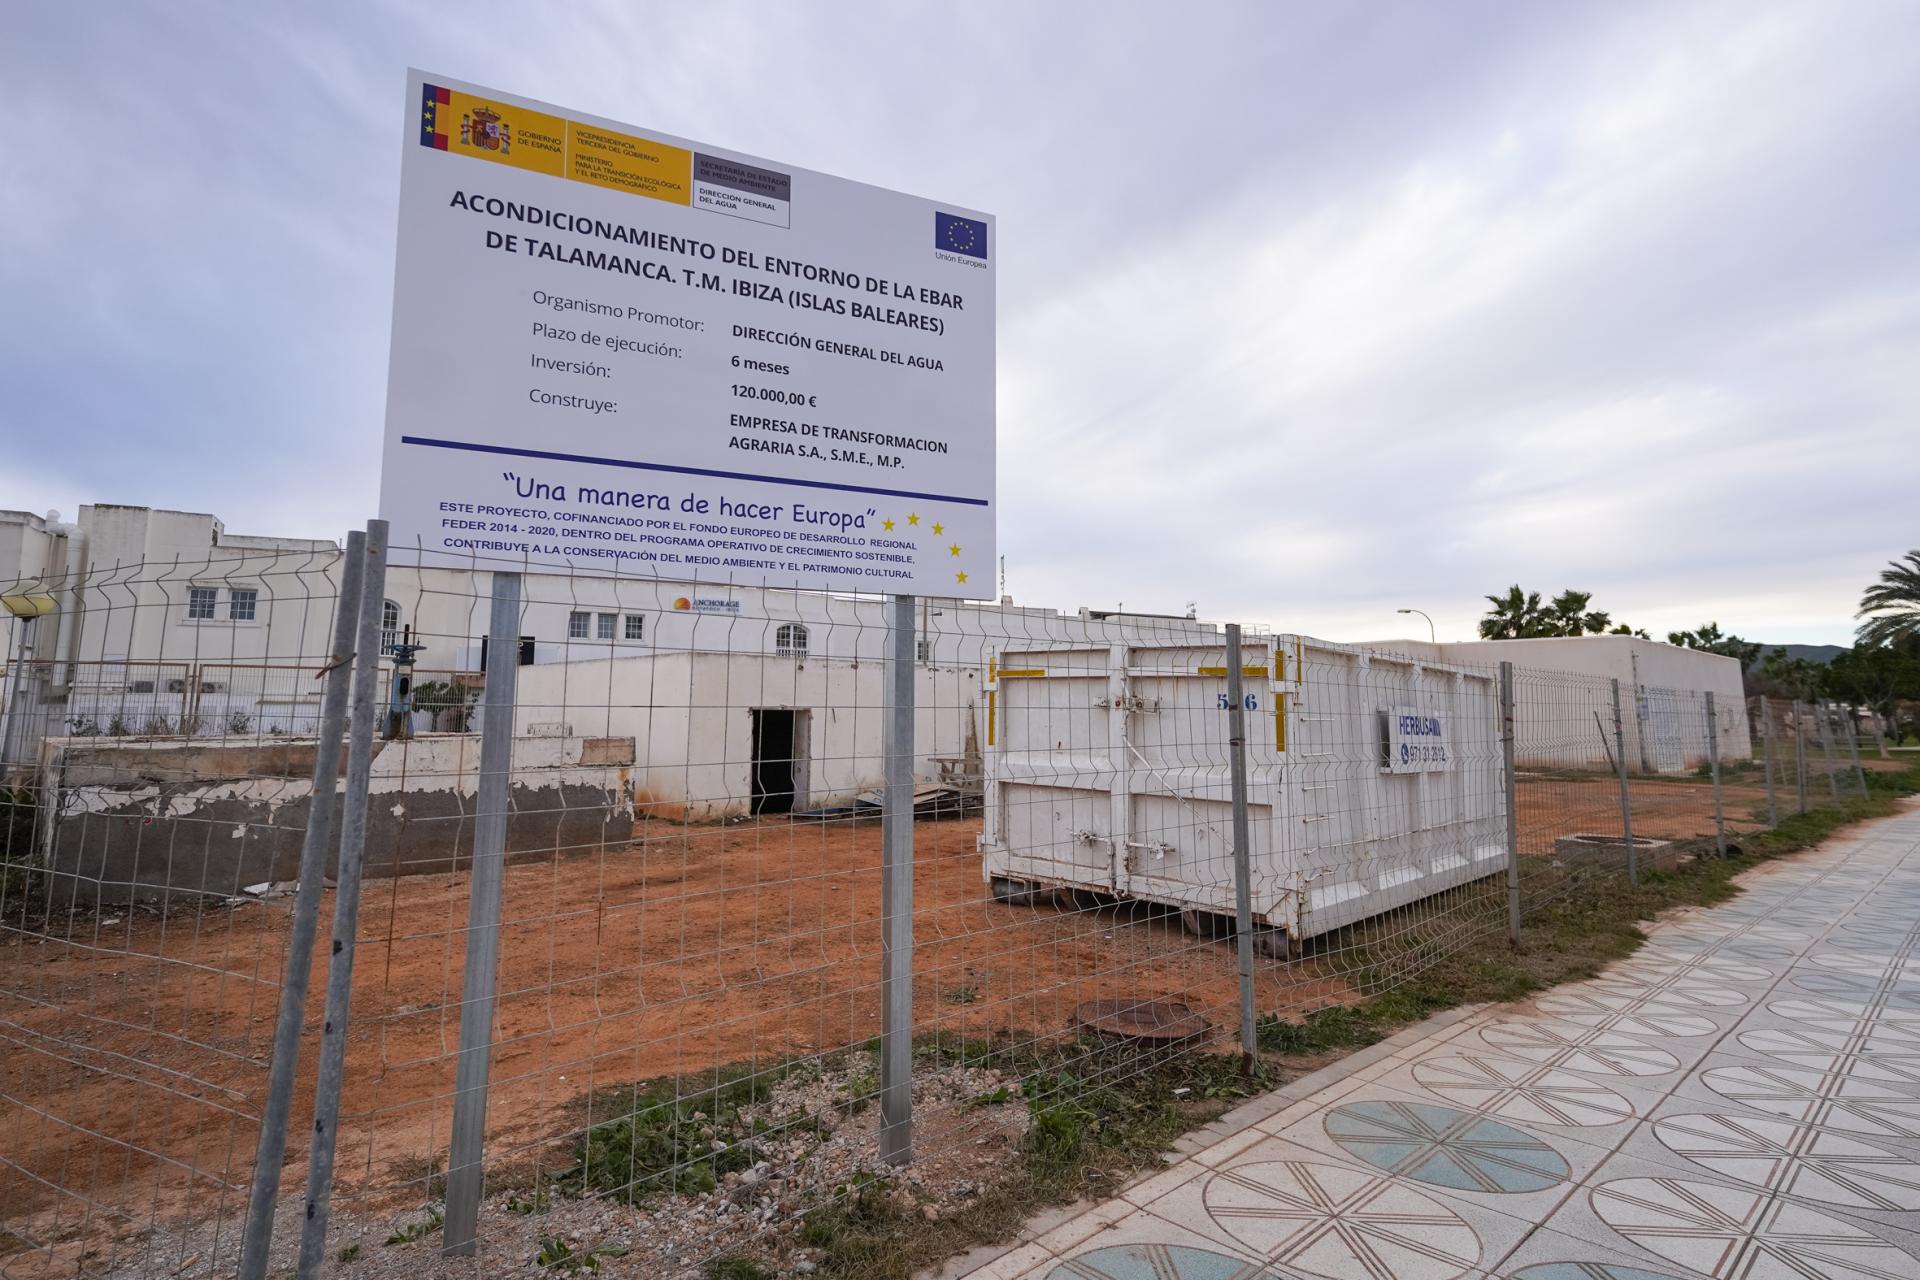 La estación de bombeo de aguas residuales de Talamanca. | Irene Arango